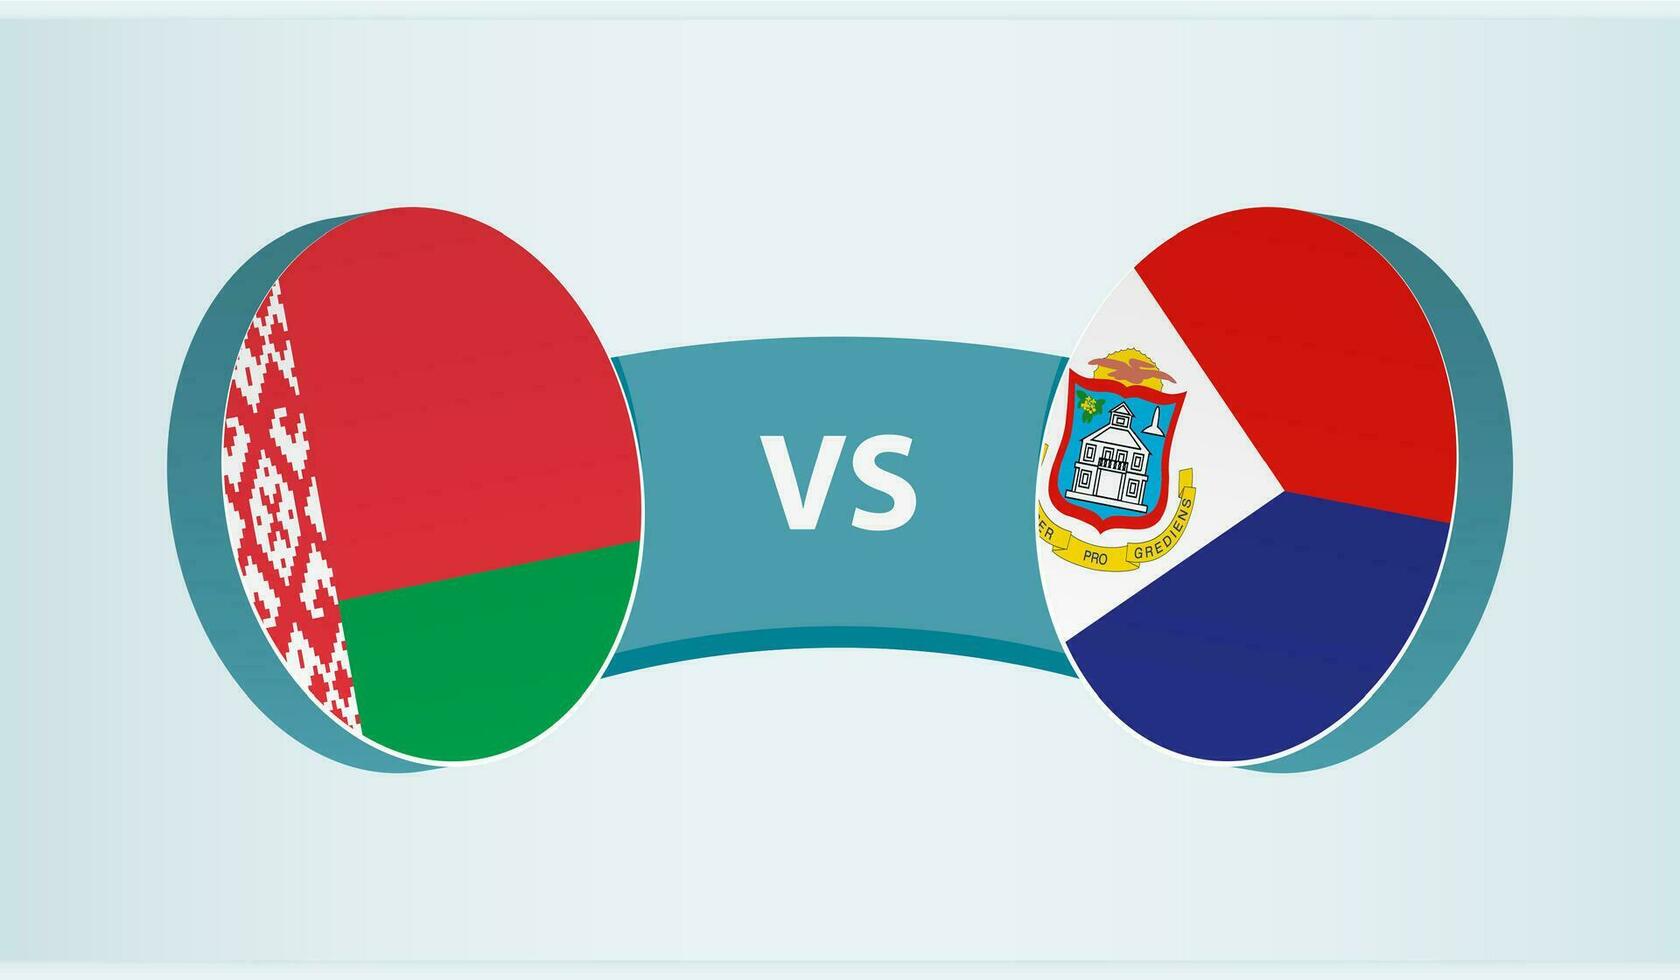 Belarus versus Sint Maarten, team sports competition concept. vector